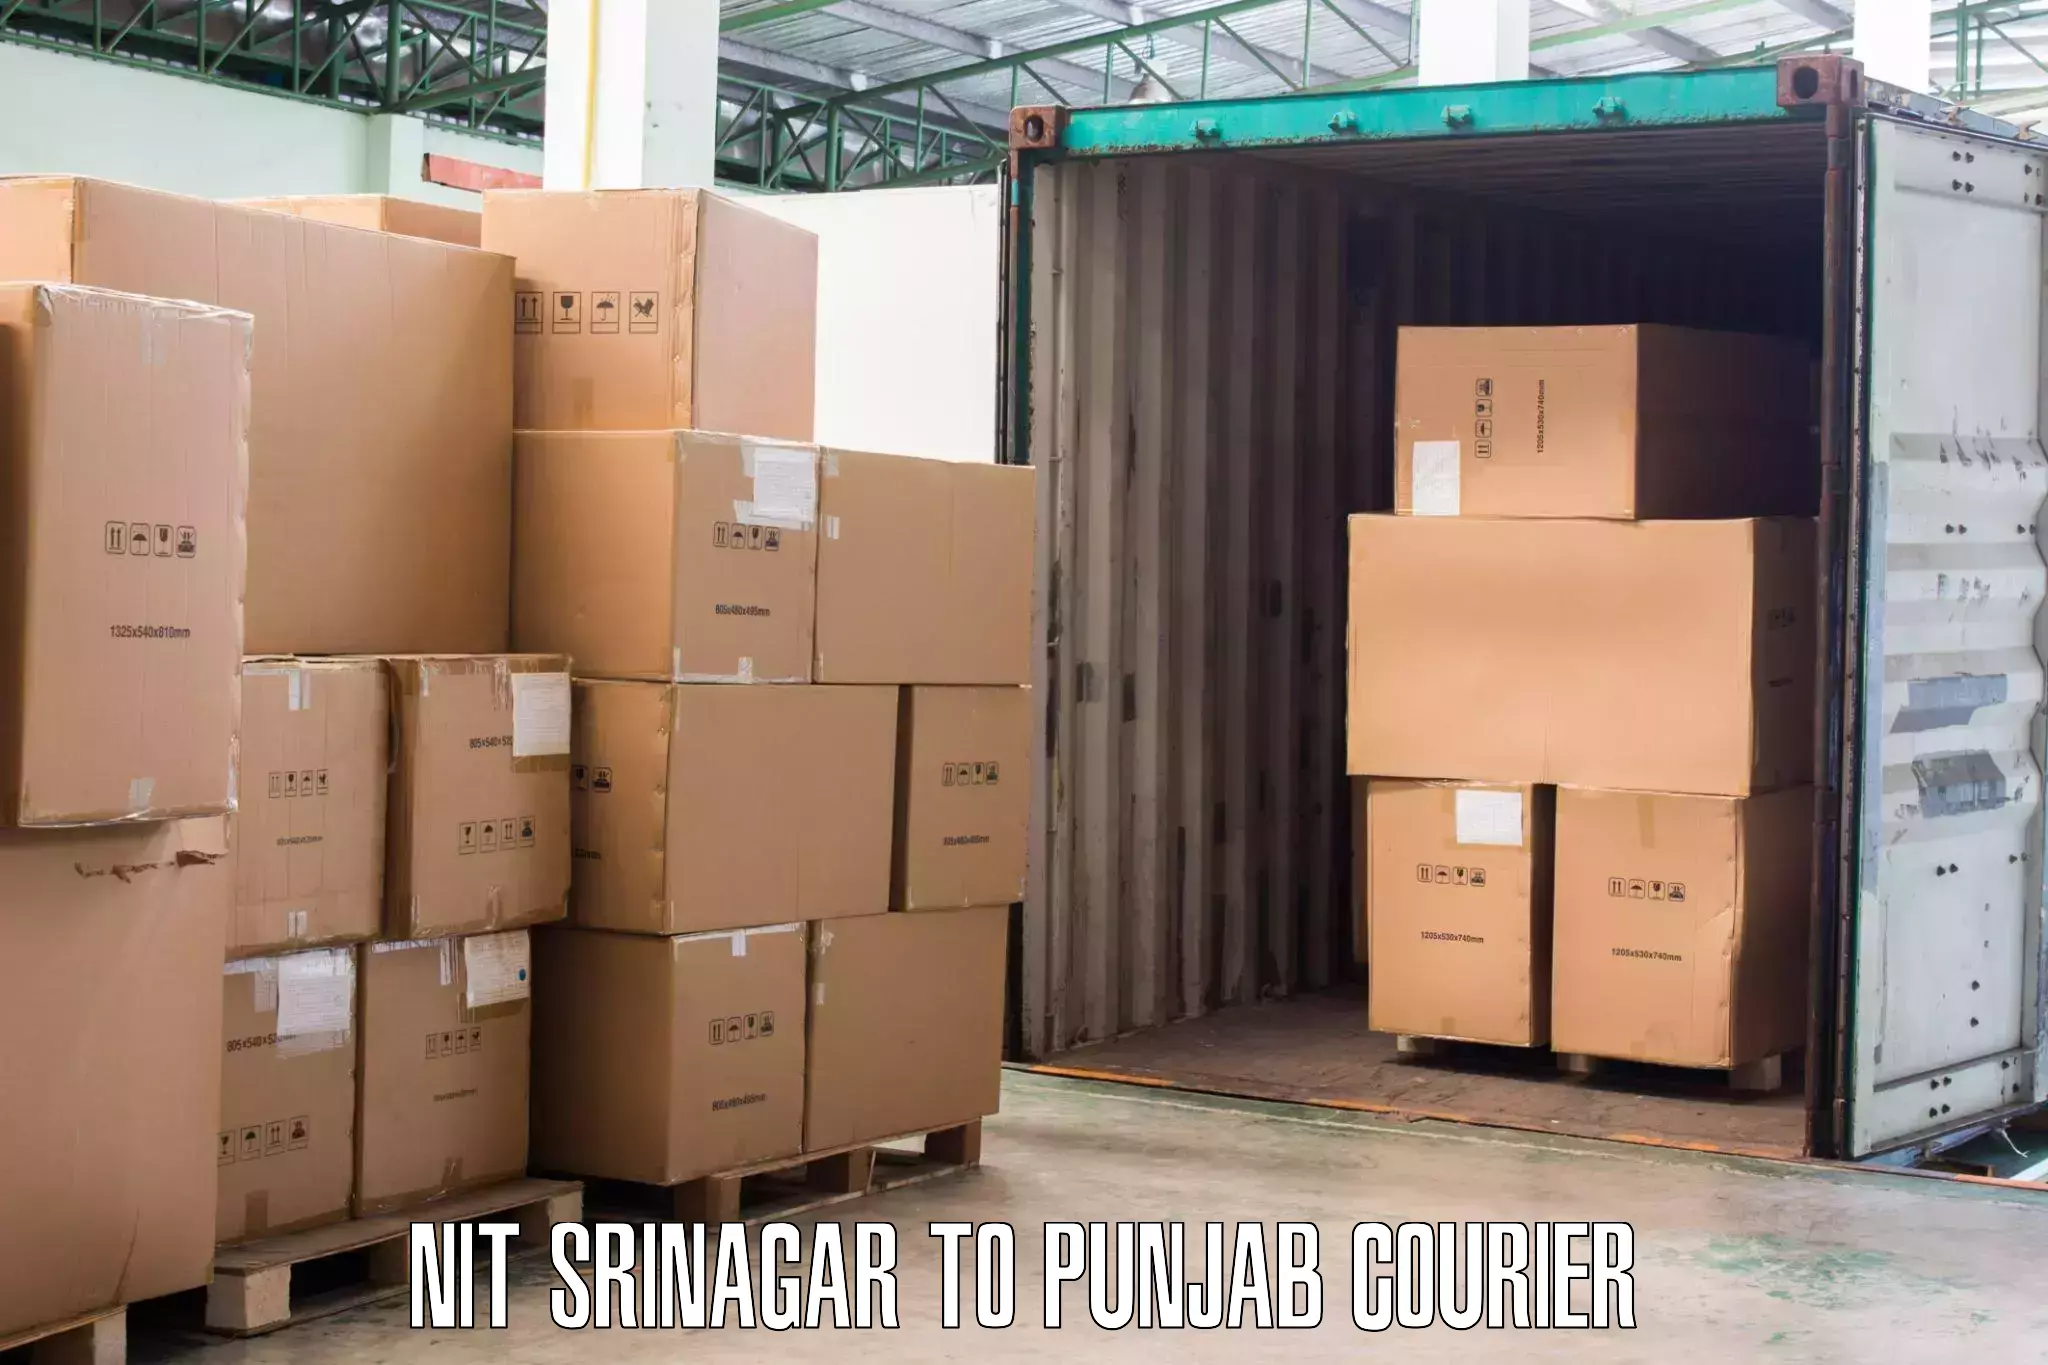 Local furniture movers NIT Srinagar to Pathankot